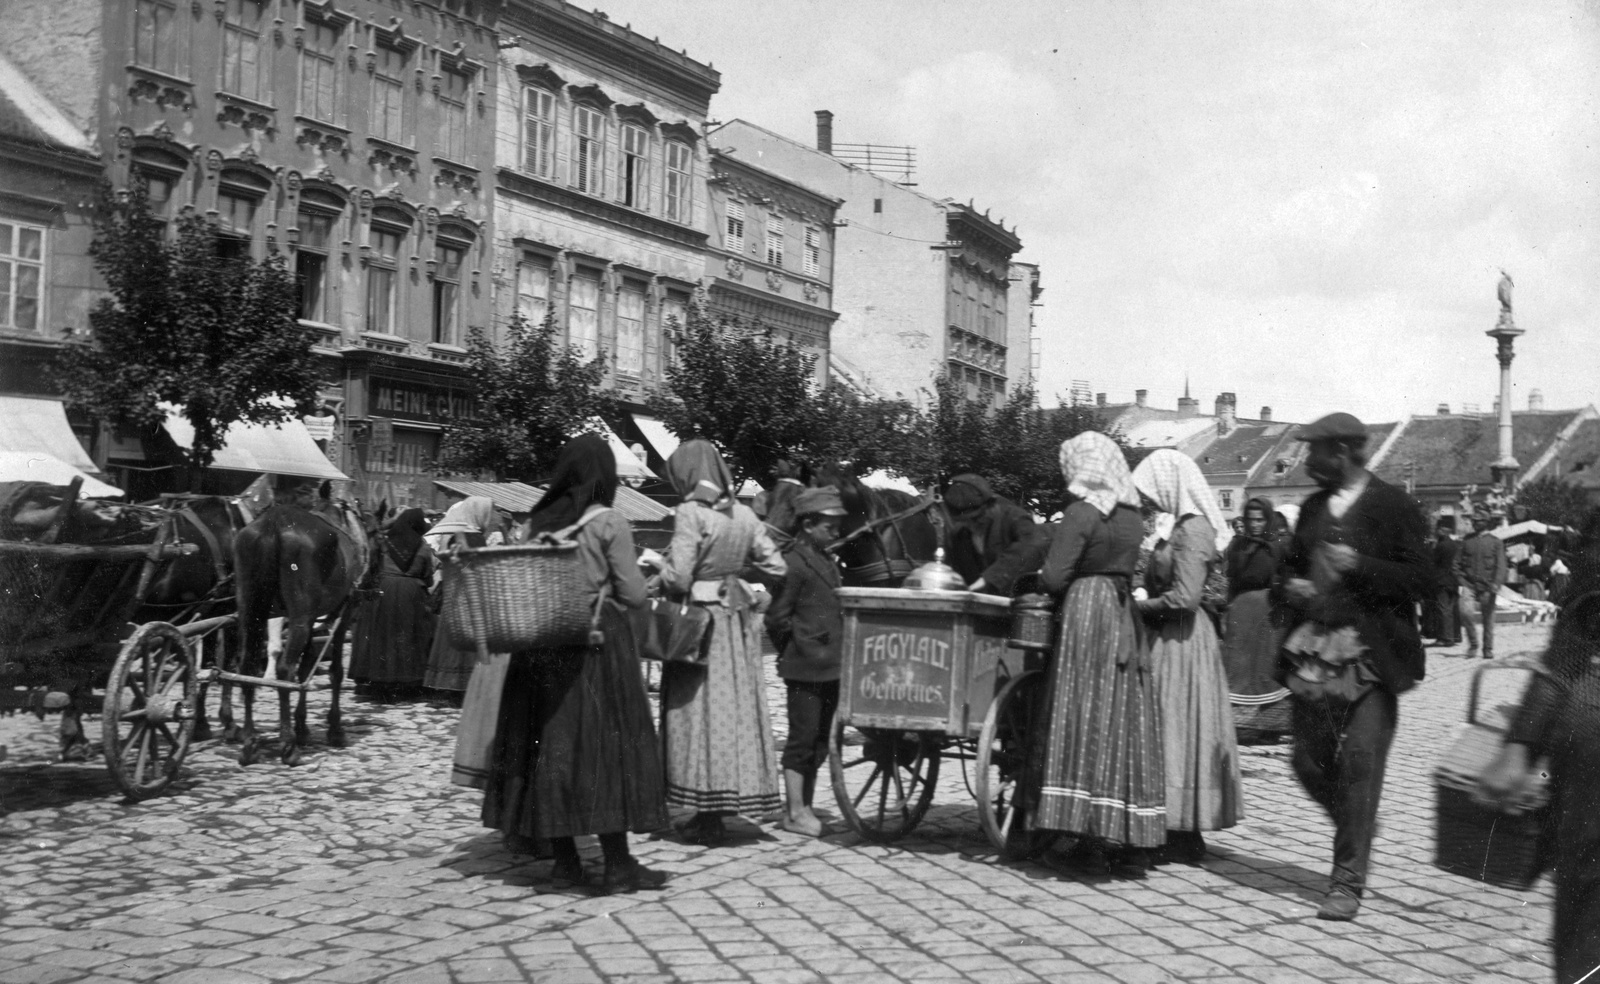 Soproni piac a Mária szobornál (1914-18 körül)